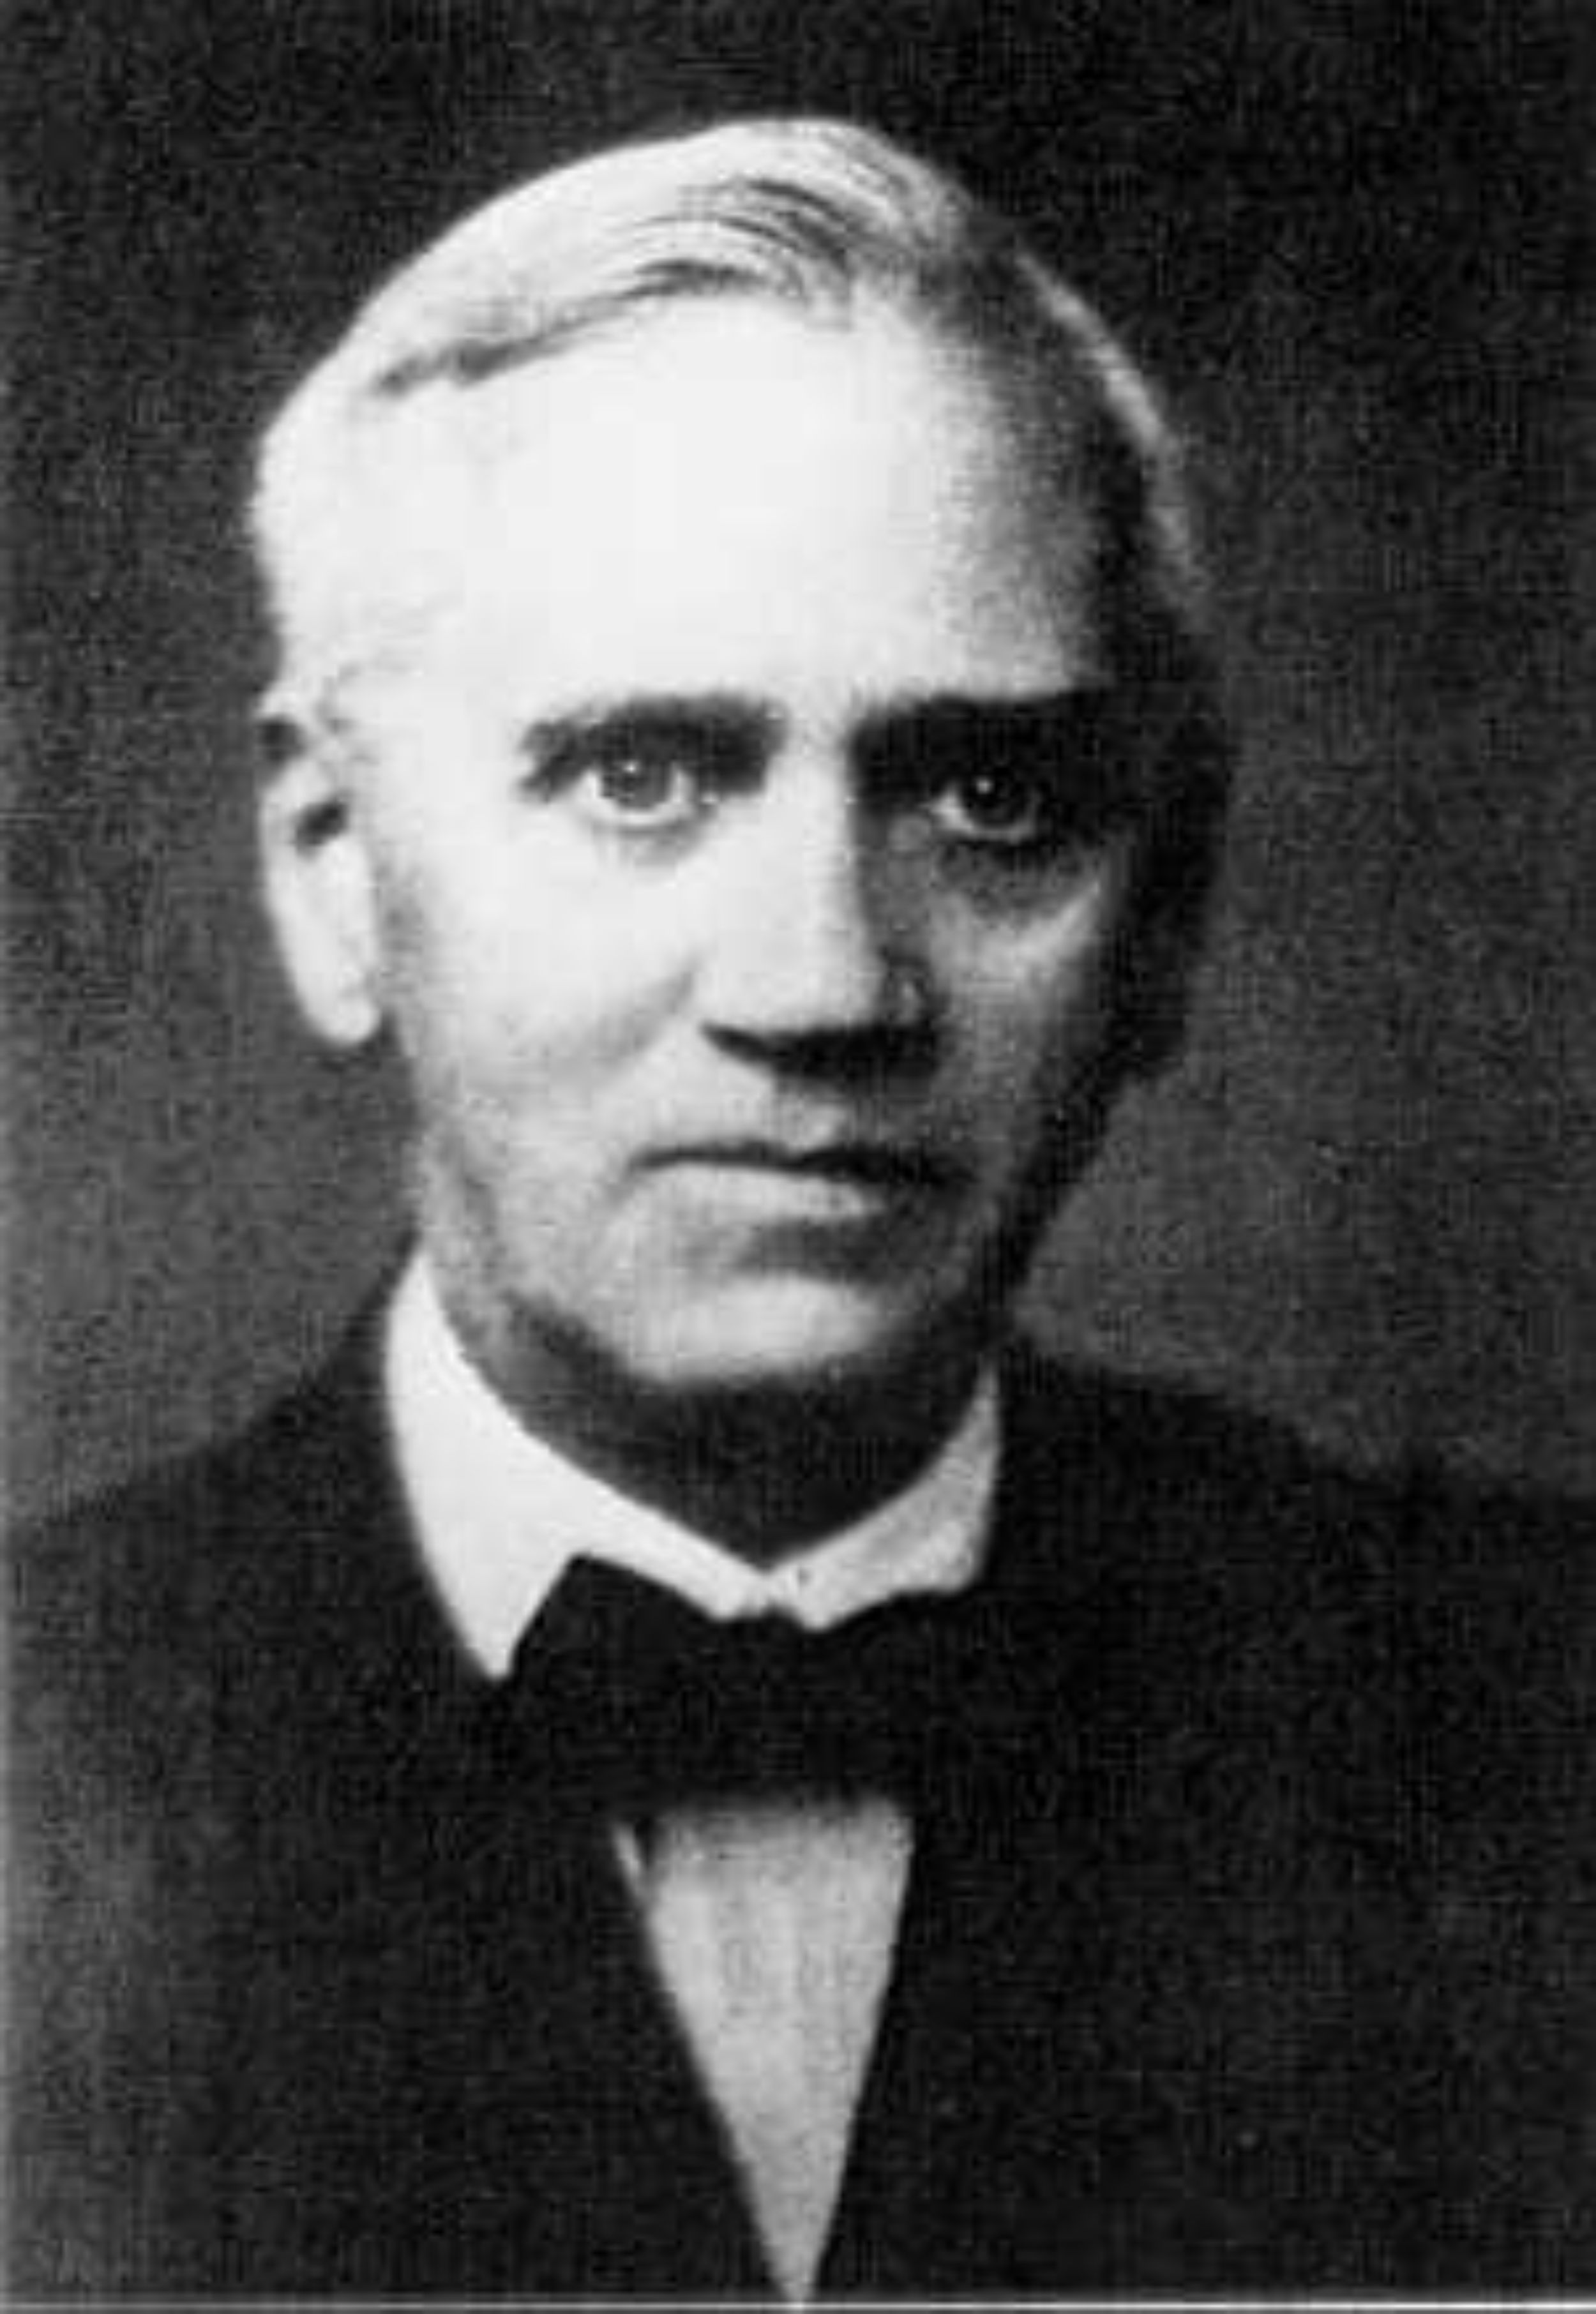  Biografía de Alexander Fleming  (1881-1955)